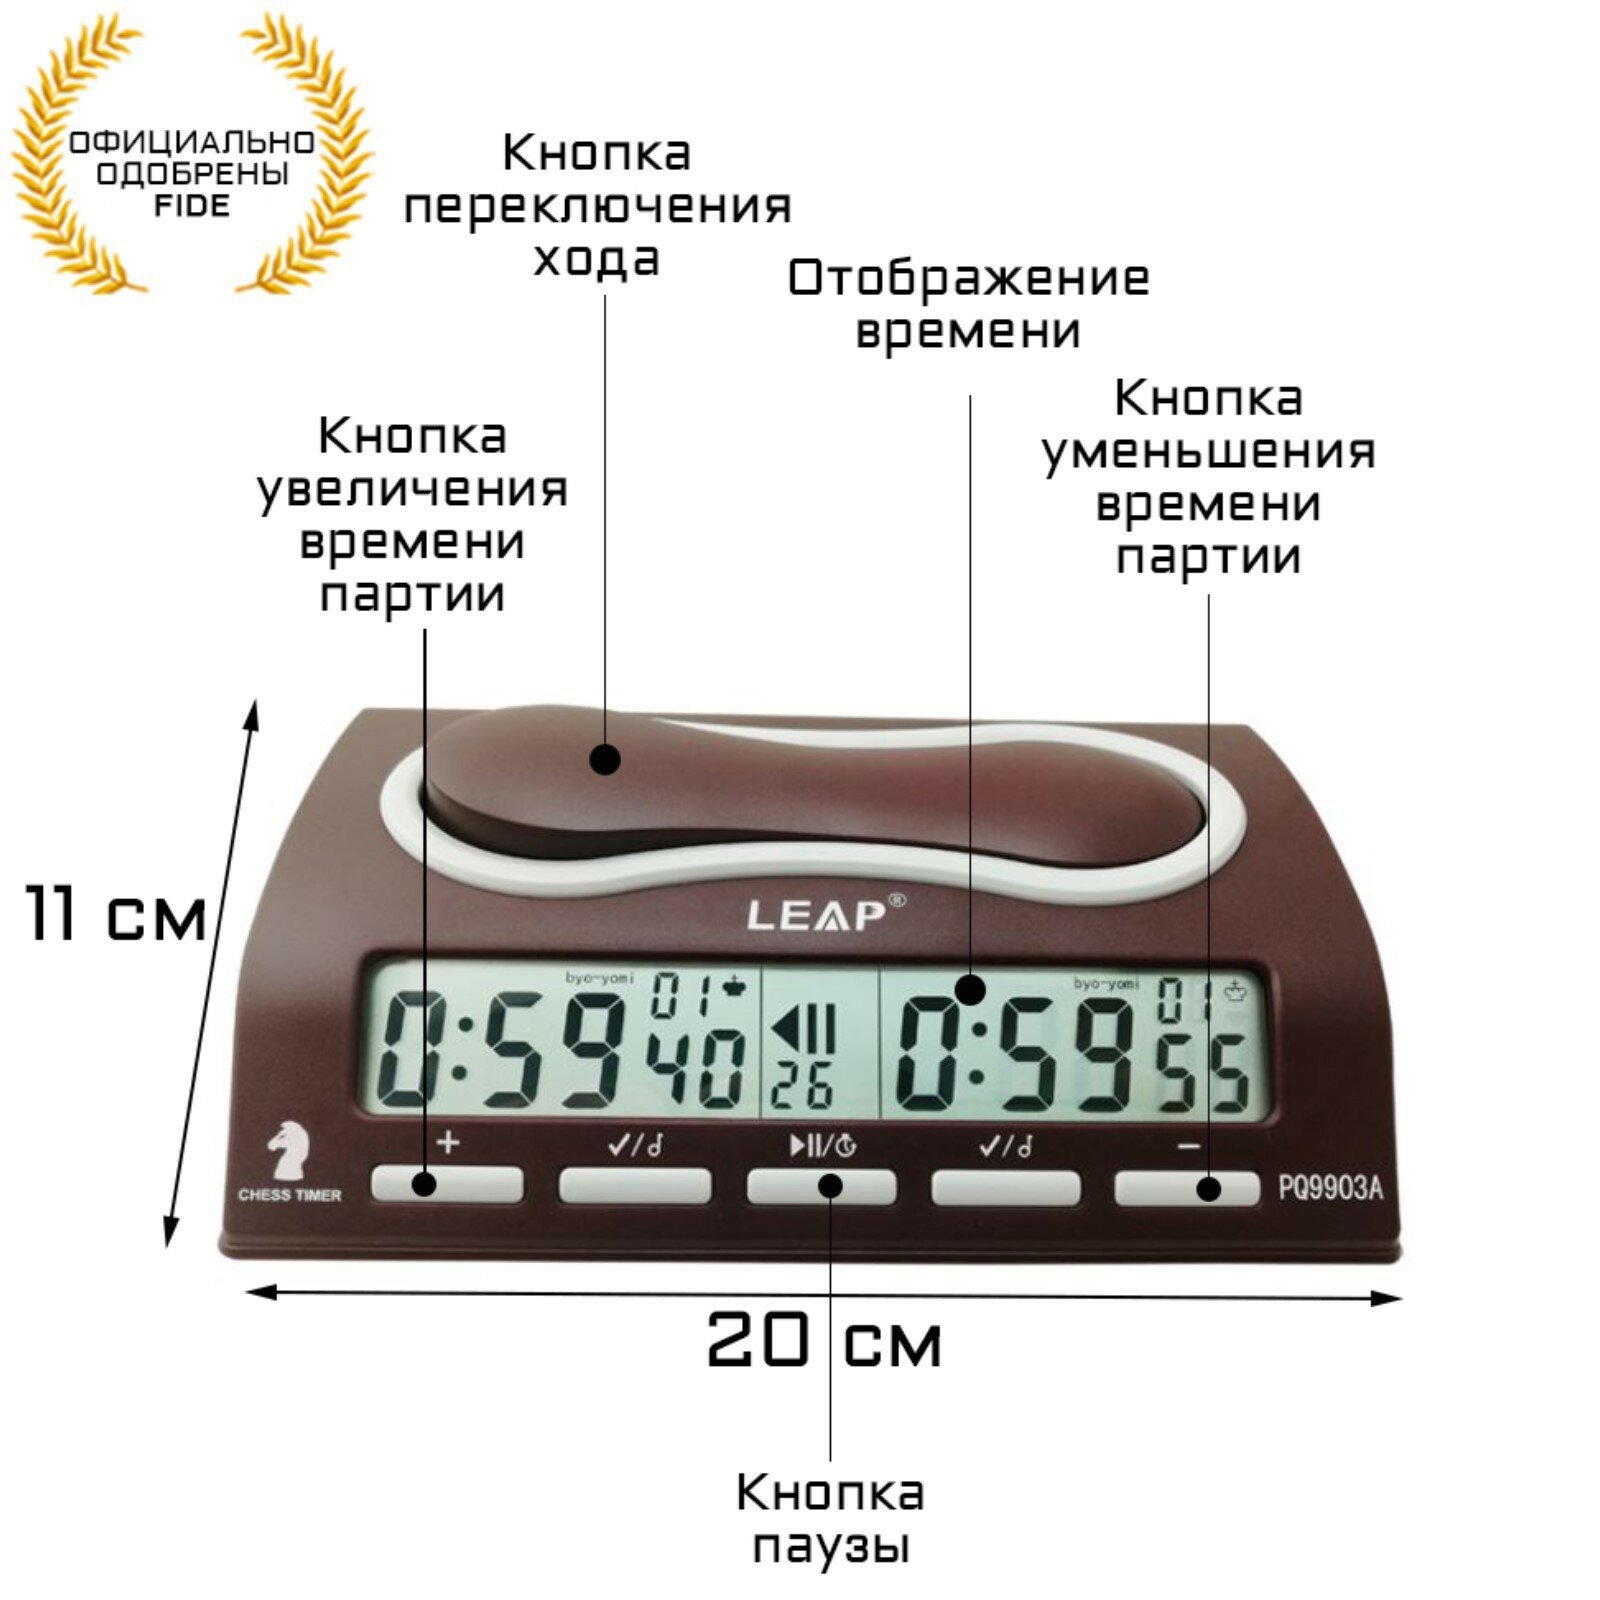 Шахматные часы, электронные, FIDE, PQ9903A, 11 х 20 х 5.5 см, 2 АА